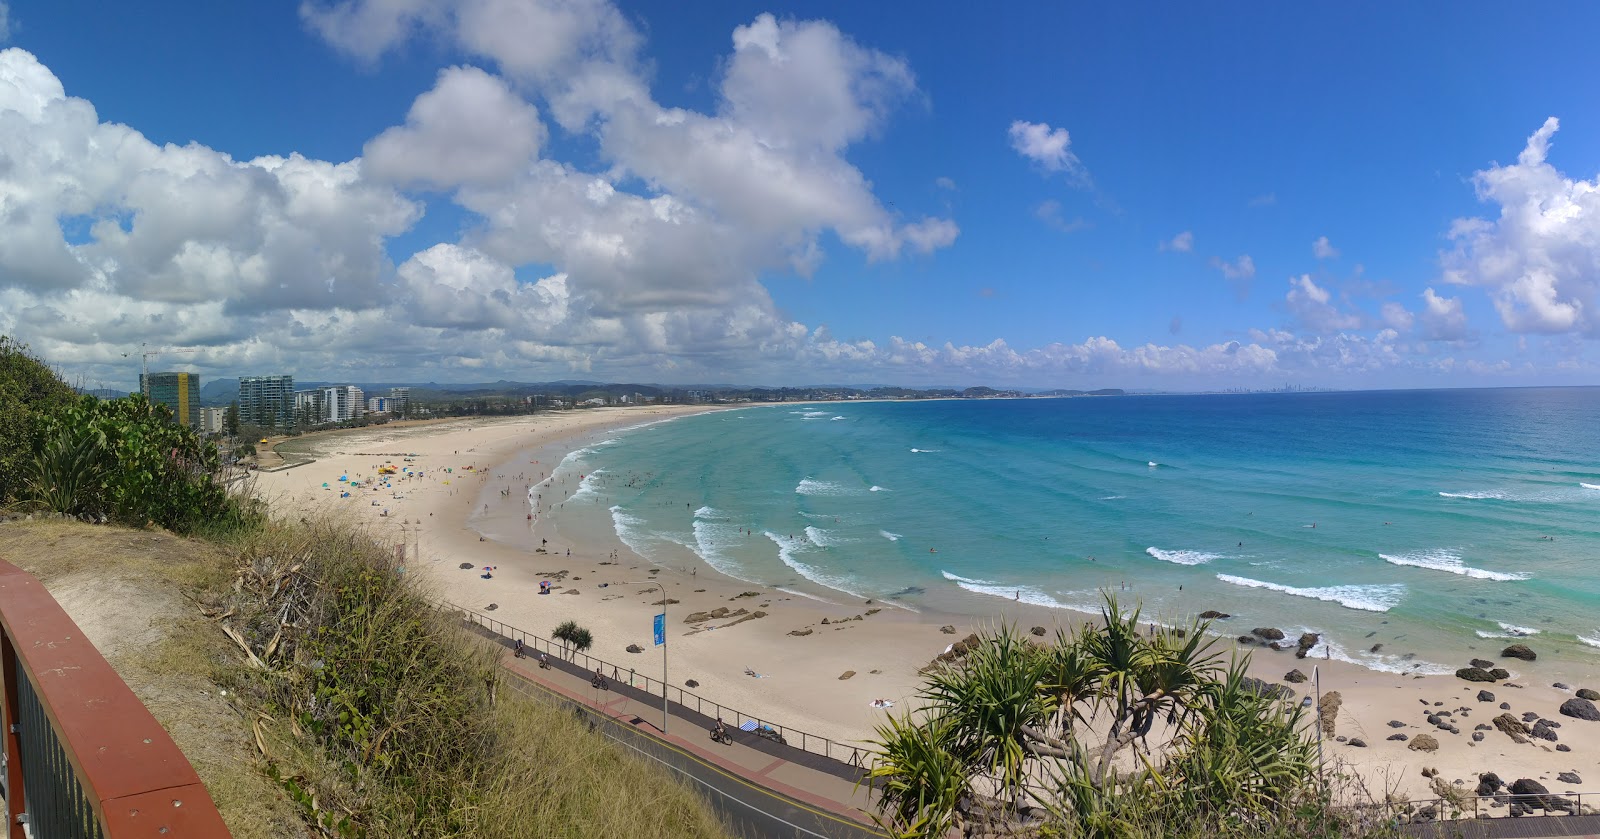 Foto af Kirra Beach - populært sted blandt afslapningskendere